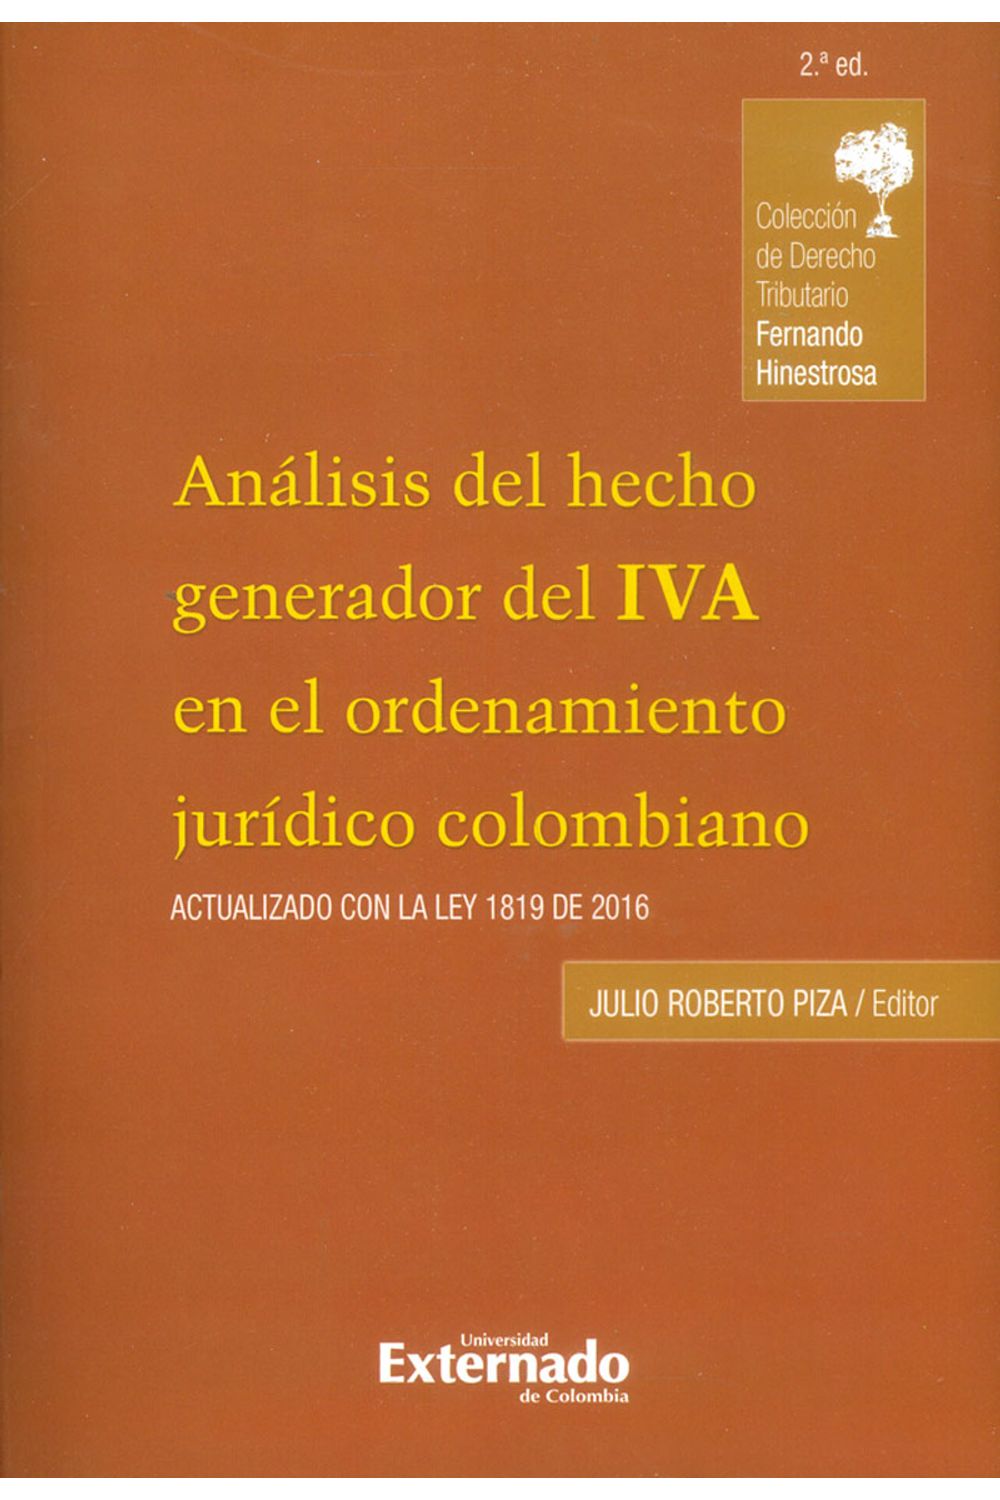 analisis-del-hecho-generador-del-iva-9789587728620-uext